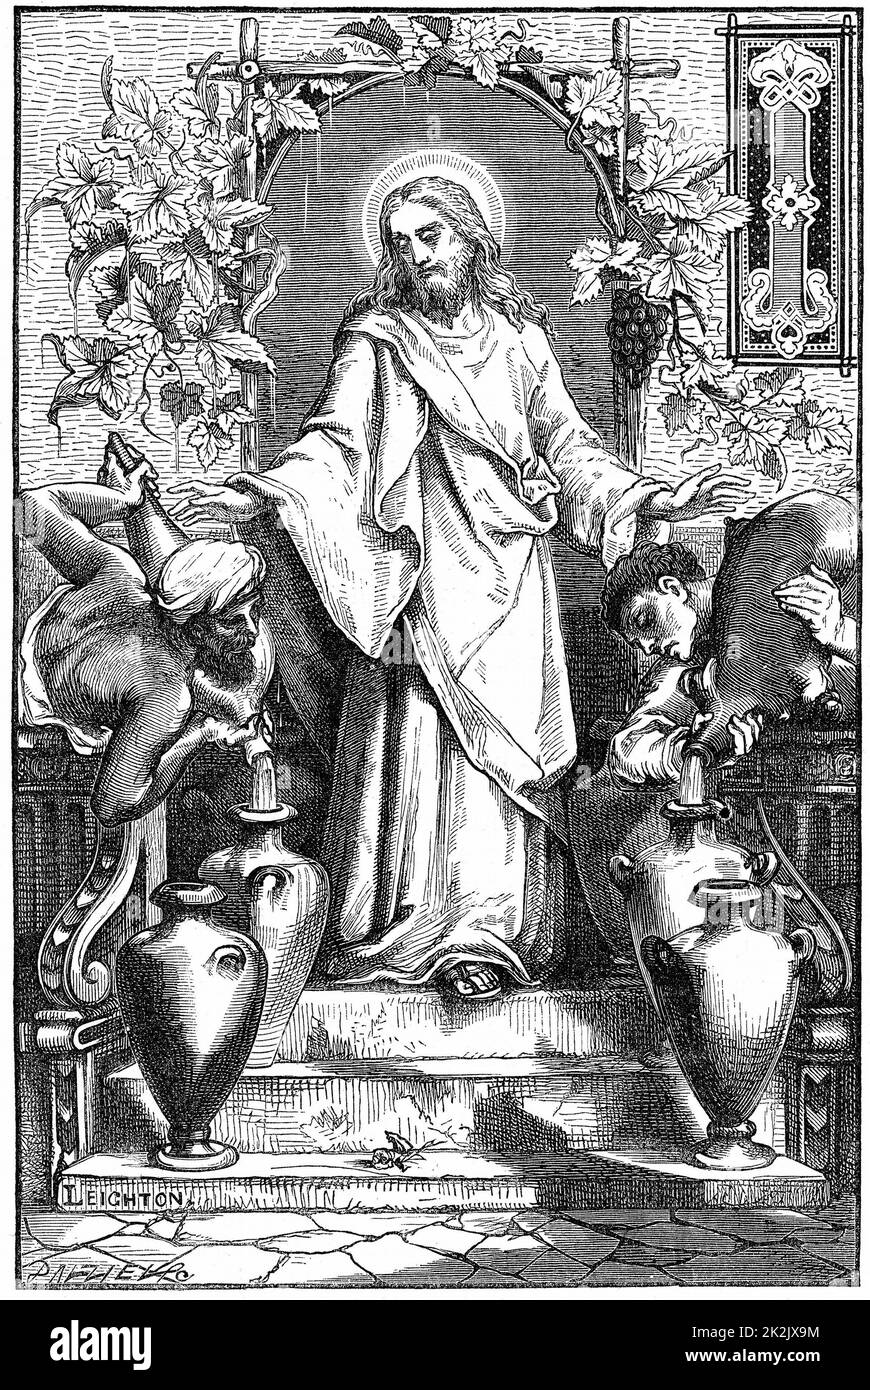 Le mariage à Canaan. Jésus transformant l'eau en vin. Illustration par Frederick, Lord Leighton. Gravure en bois de 1870 Banque D'Images